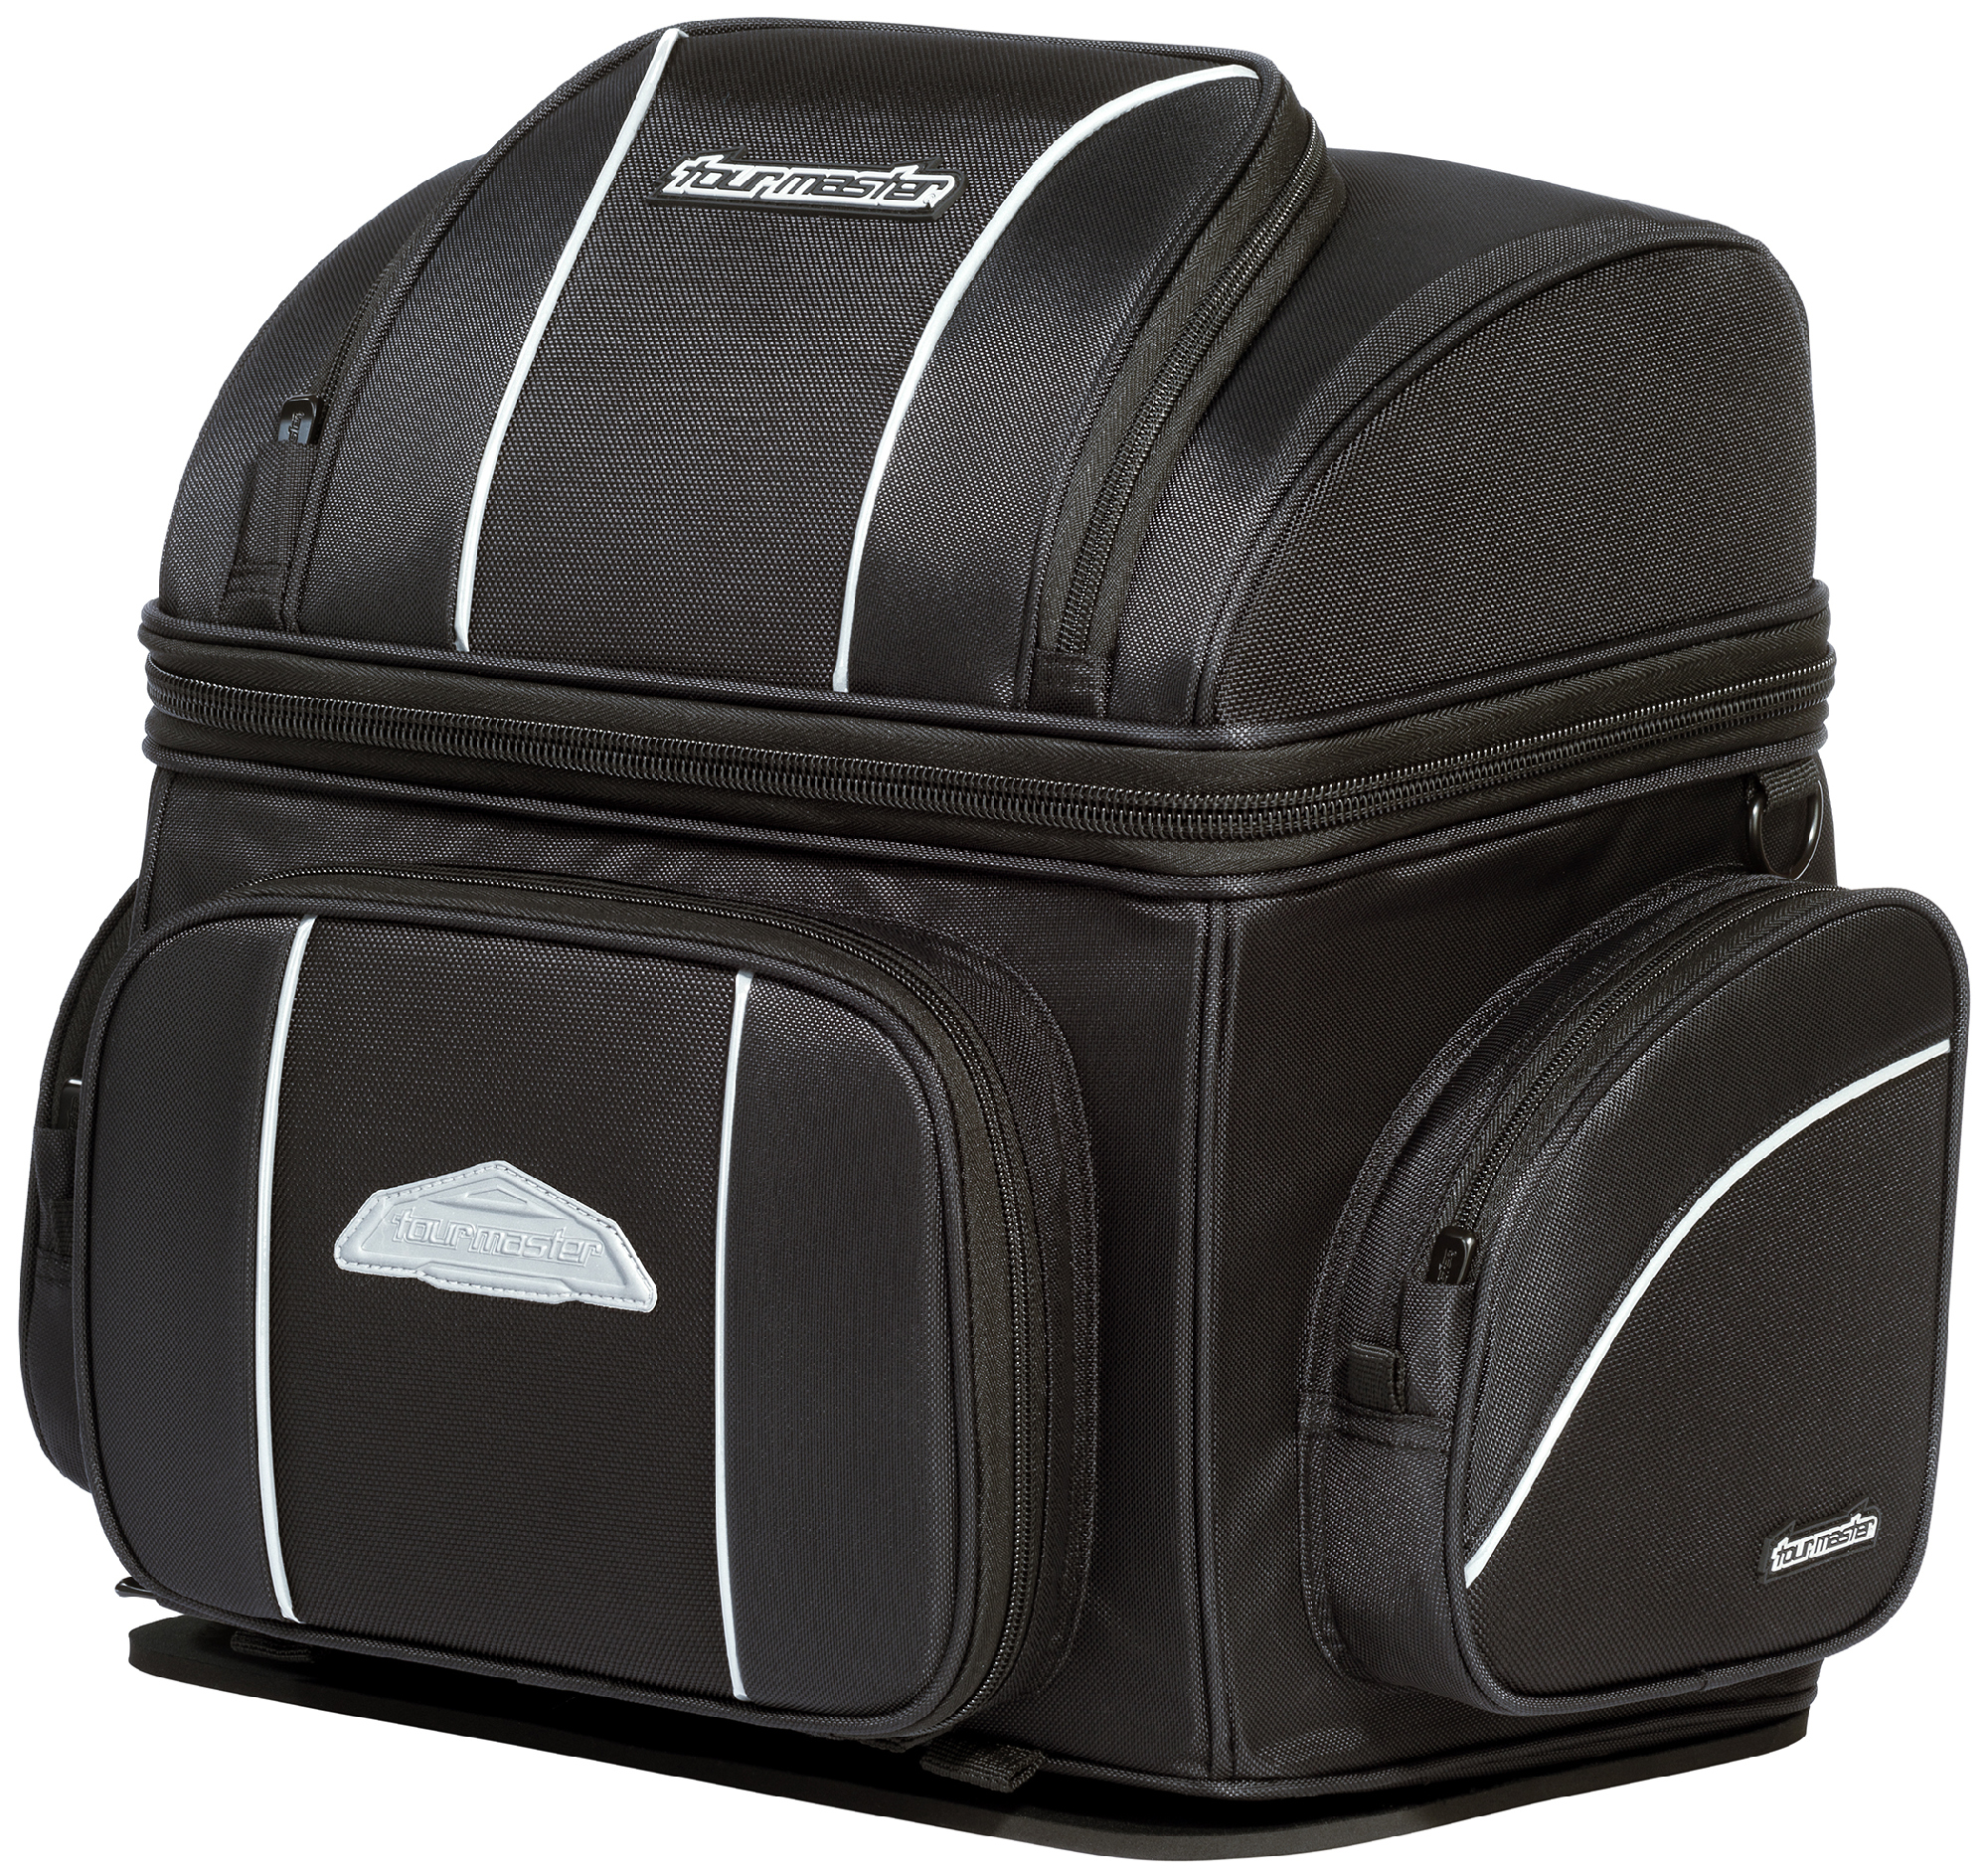 Tourmaster Black Nylon Cruiser 4.0 Motorcycle Sissybar Bags | eBay